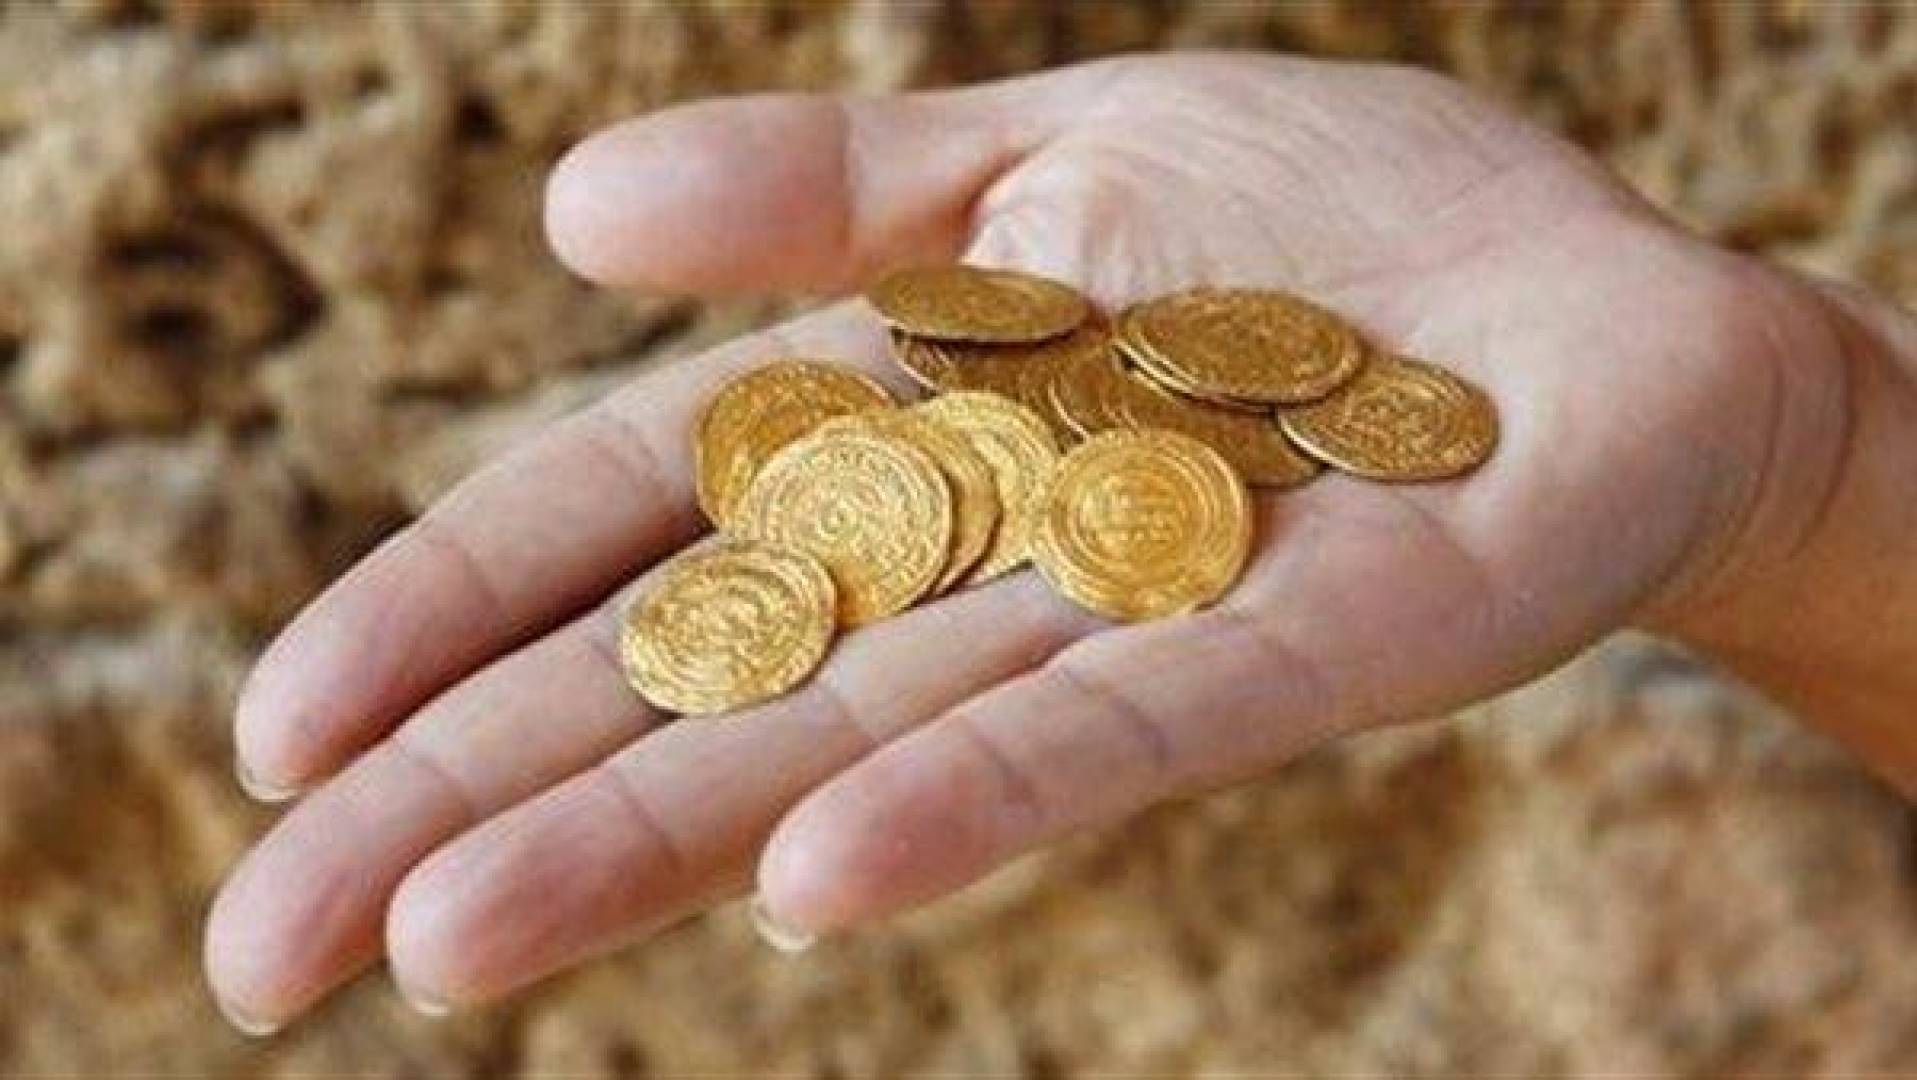 اكتشاف قطع نقدية ذهبية تعود إلى عصر الإسكندر المقدوني في روسيا